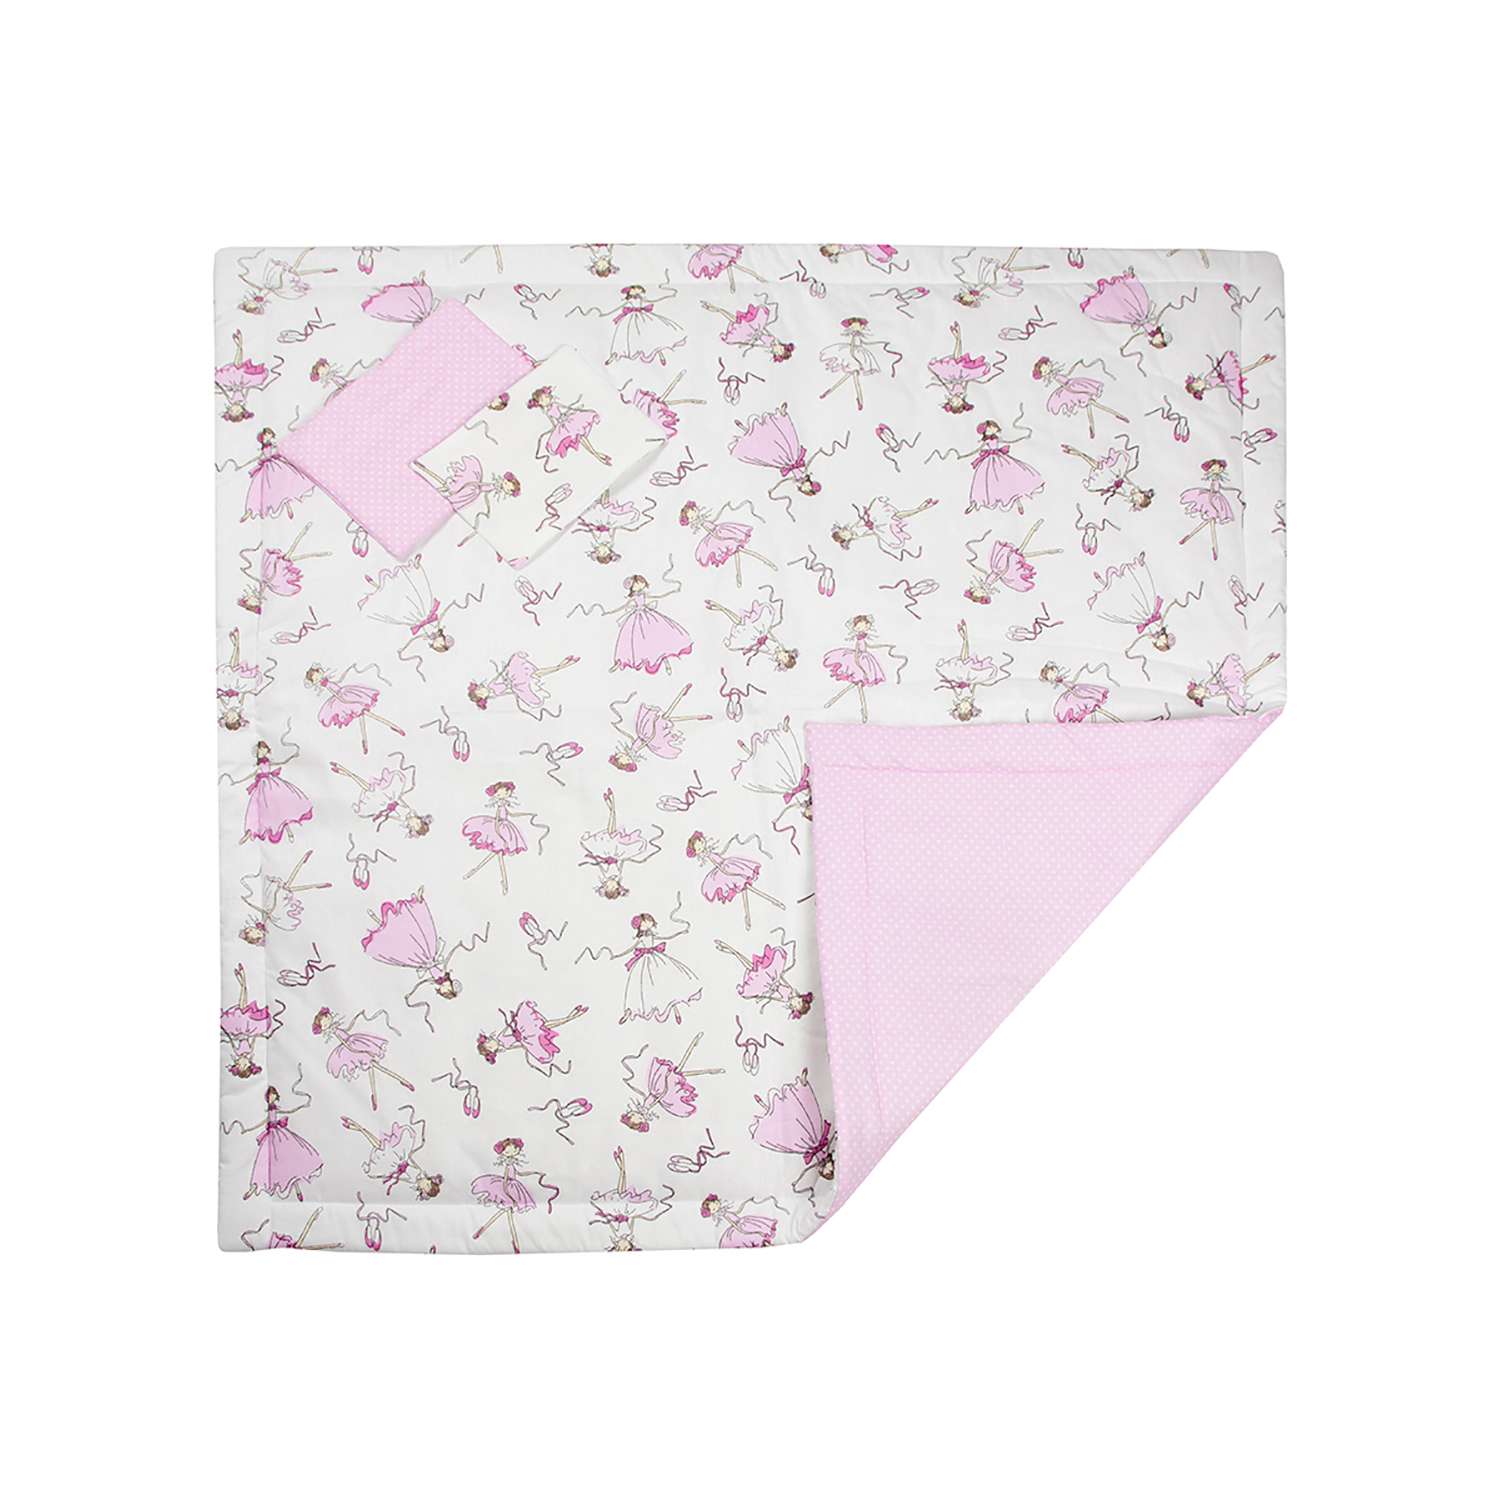 Конверт-одеяло Чудо-чадо для новорожденного на выписку Нелето балерины/розовый - фото 4